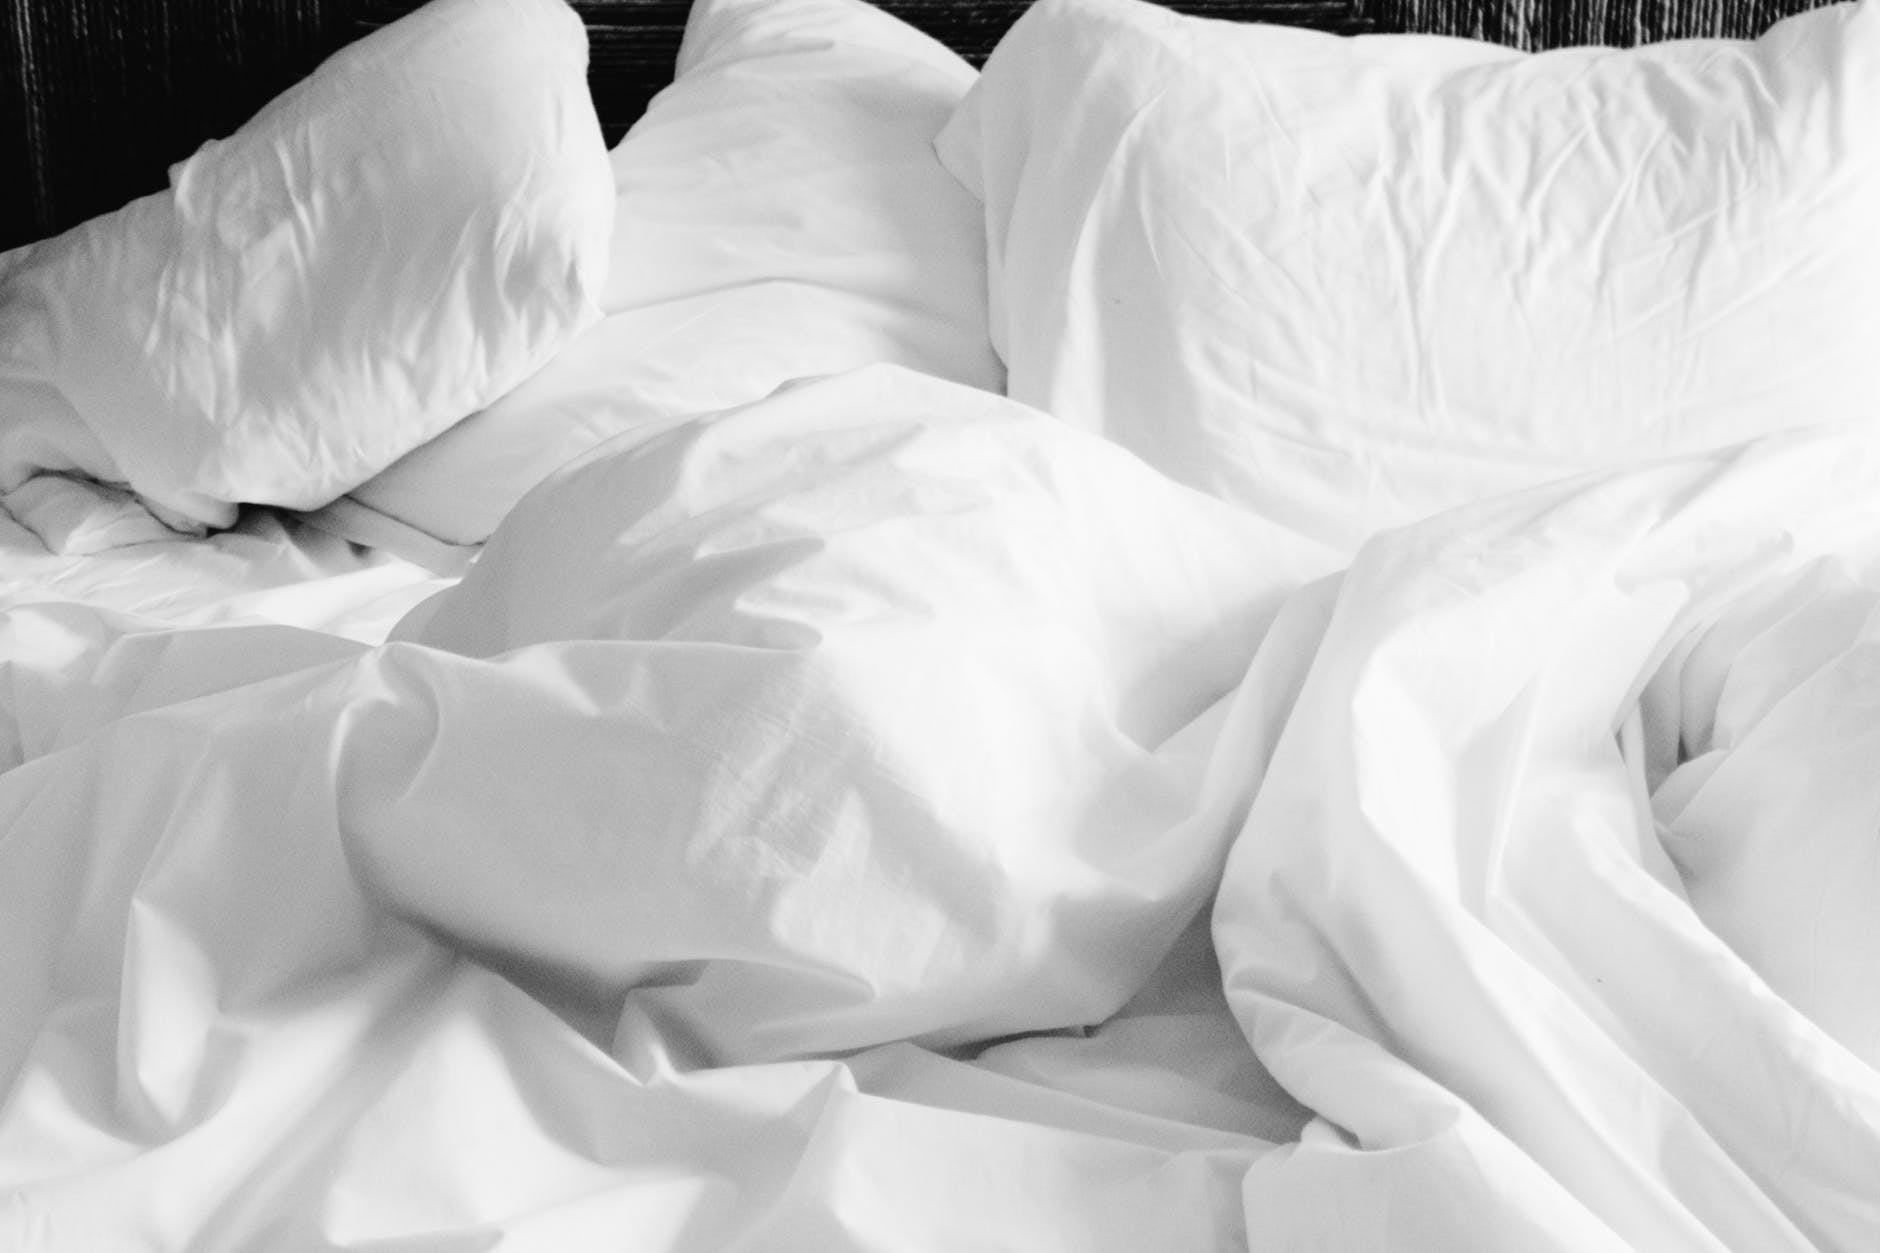 Πώς συνδέεται η έλλειψη ύπνου με επικίνδυνες σεξουαλικές συμπεριφορές στην εφηβεία;